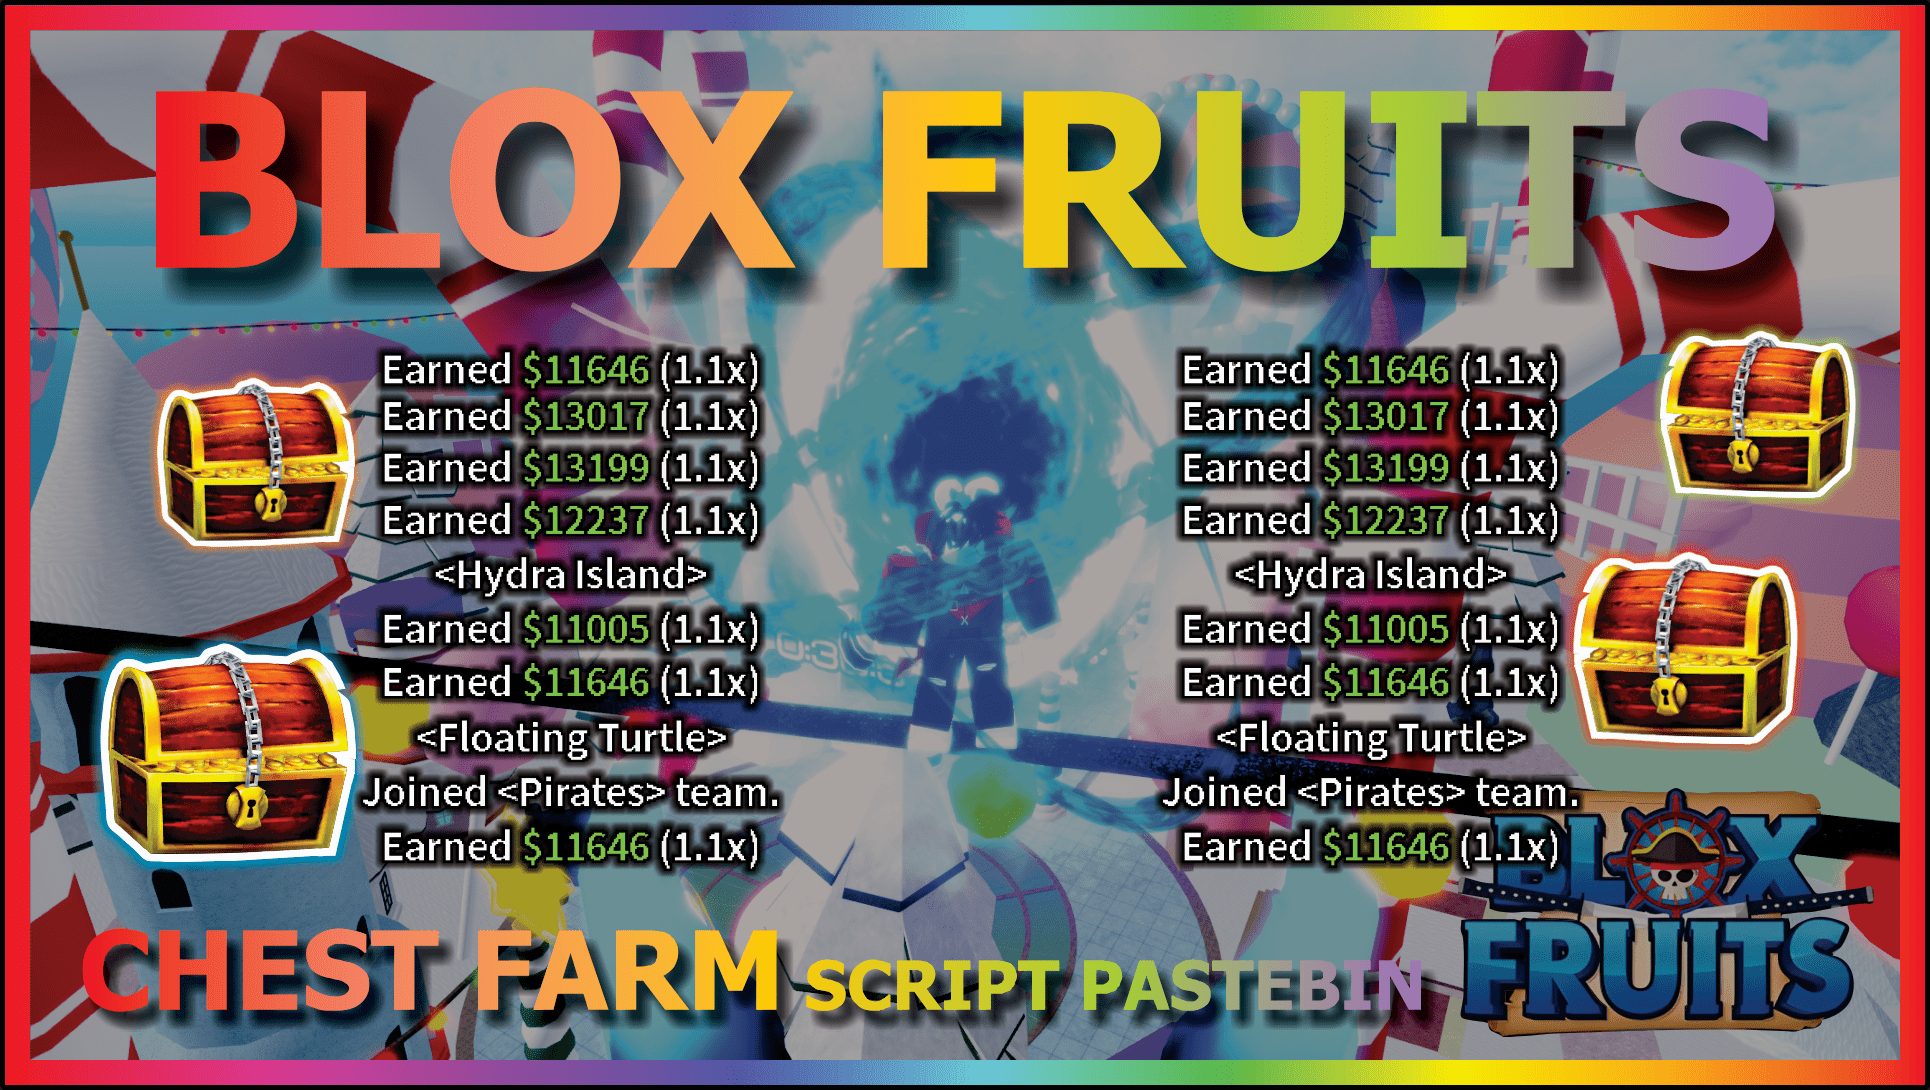 Auto Farm Chest Blox Fruits Mobile Script